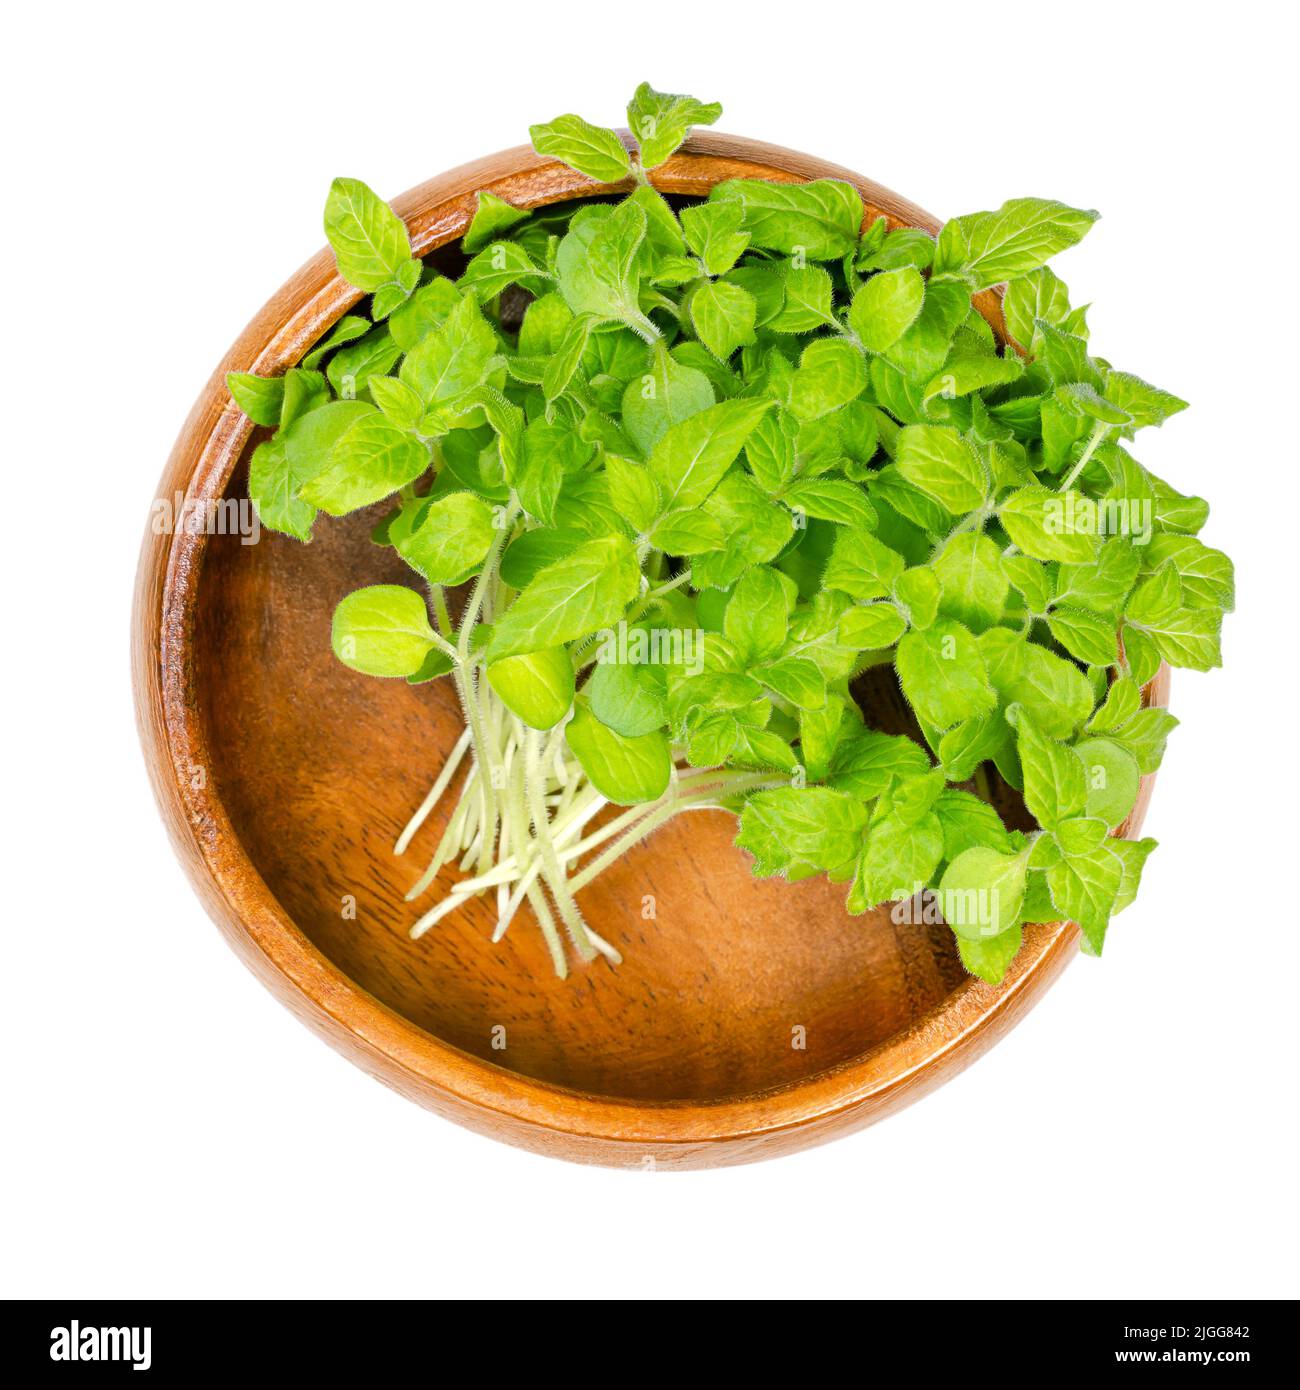 Sesam oder Benne mikrogrün, in einer Holzschale. Bereit, frische und grüne Jungpflanzen von Sesamum zu essen, leicht bittere und gesunde Triebe. Stockfoto